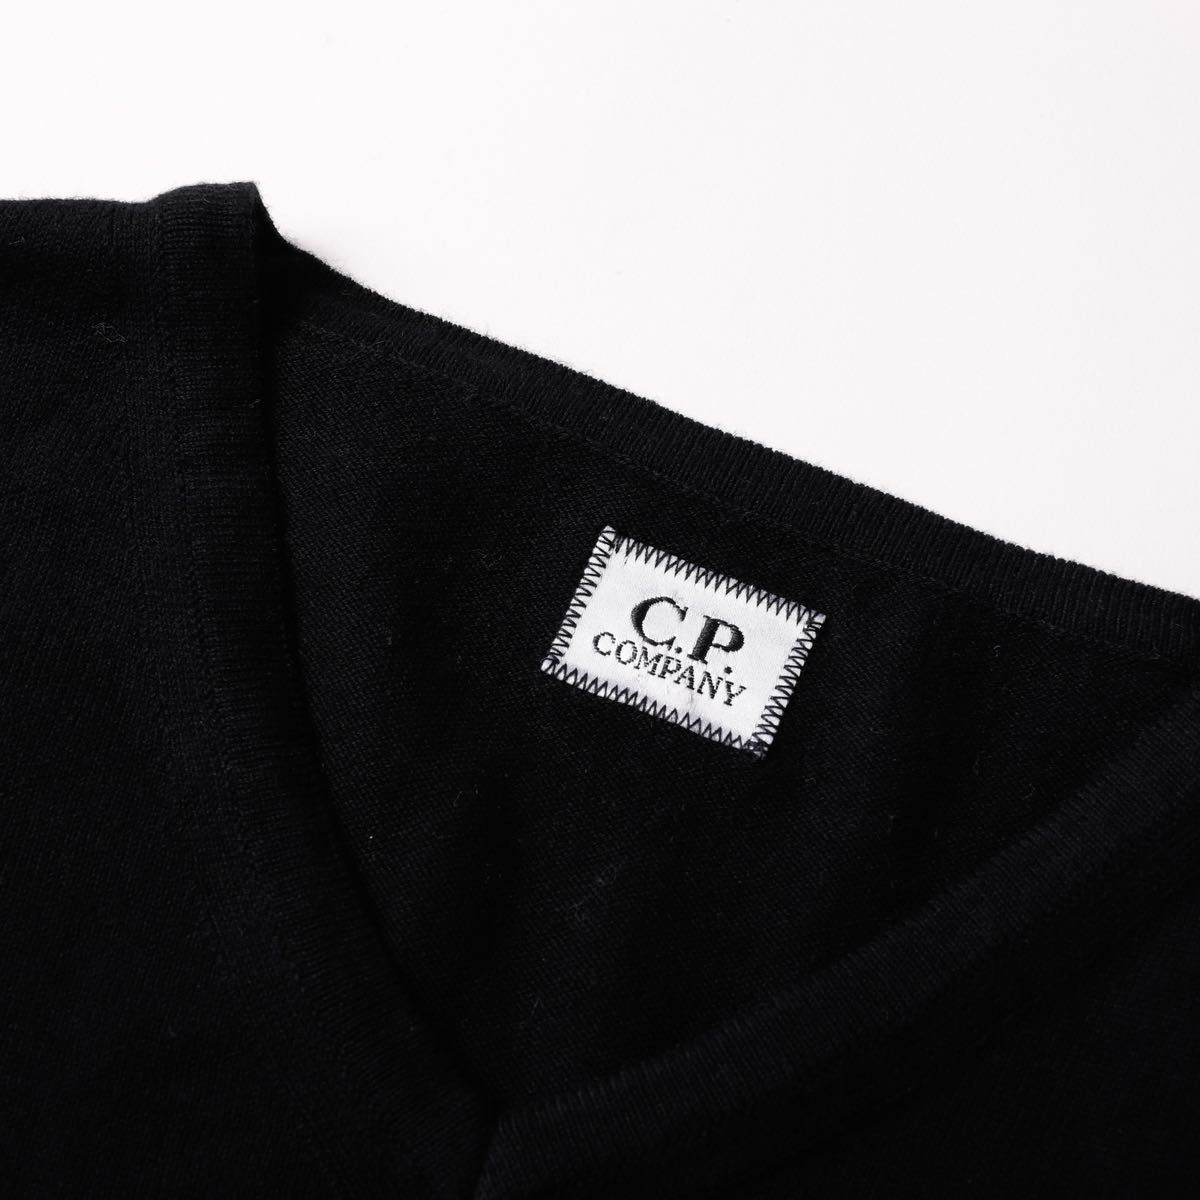 【美品】C.P. Company V-neck knit sweater / シーピーカンパニー Vネック ニット セーター 黒 サイズ50 イタリア製 トップス 定番 _画像6